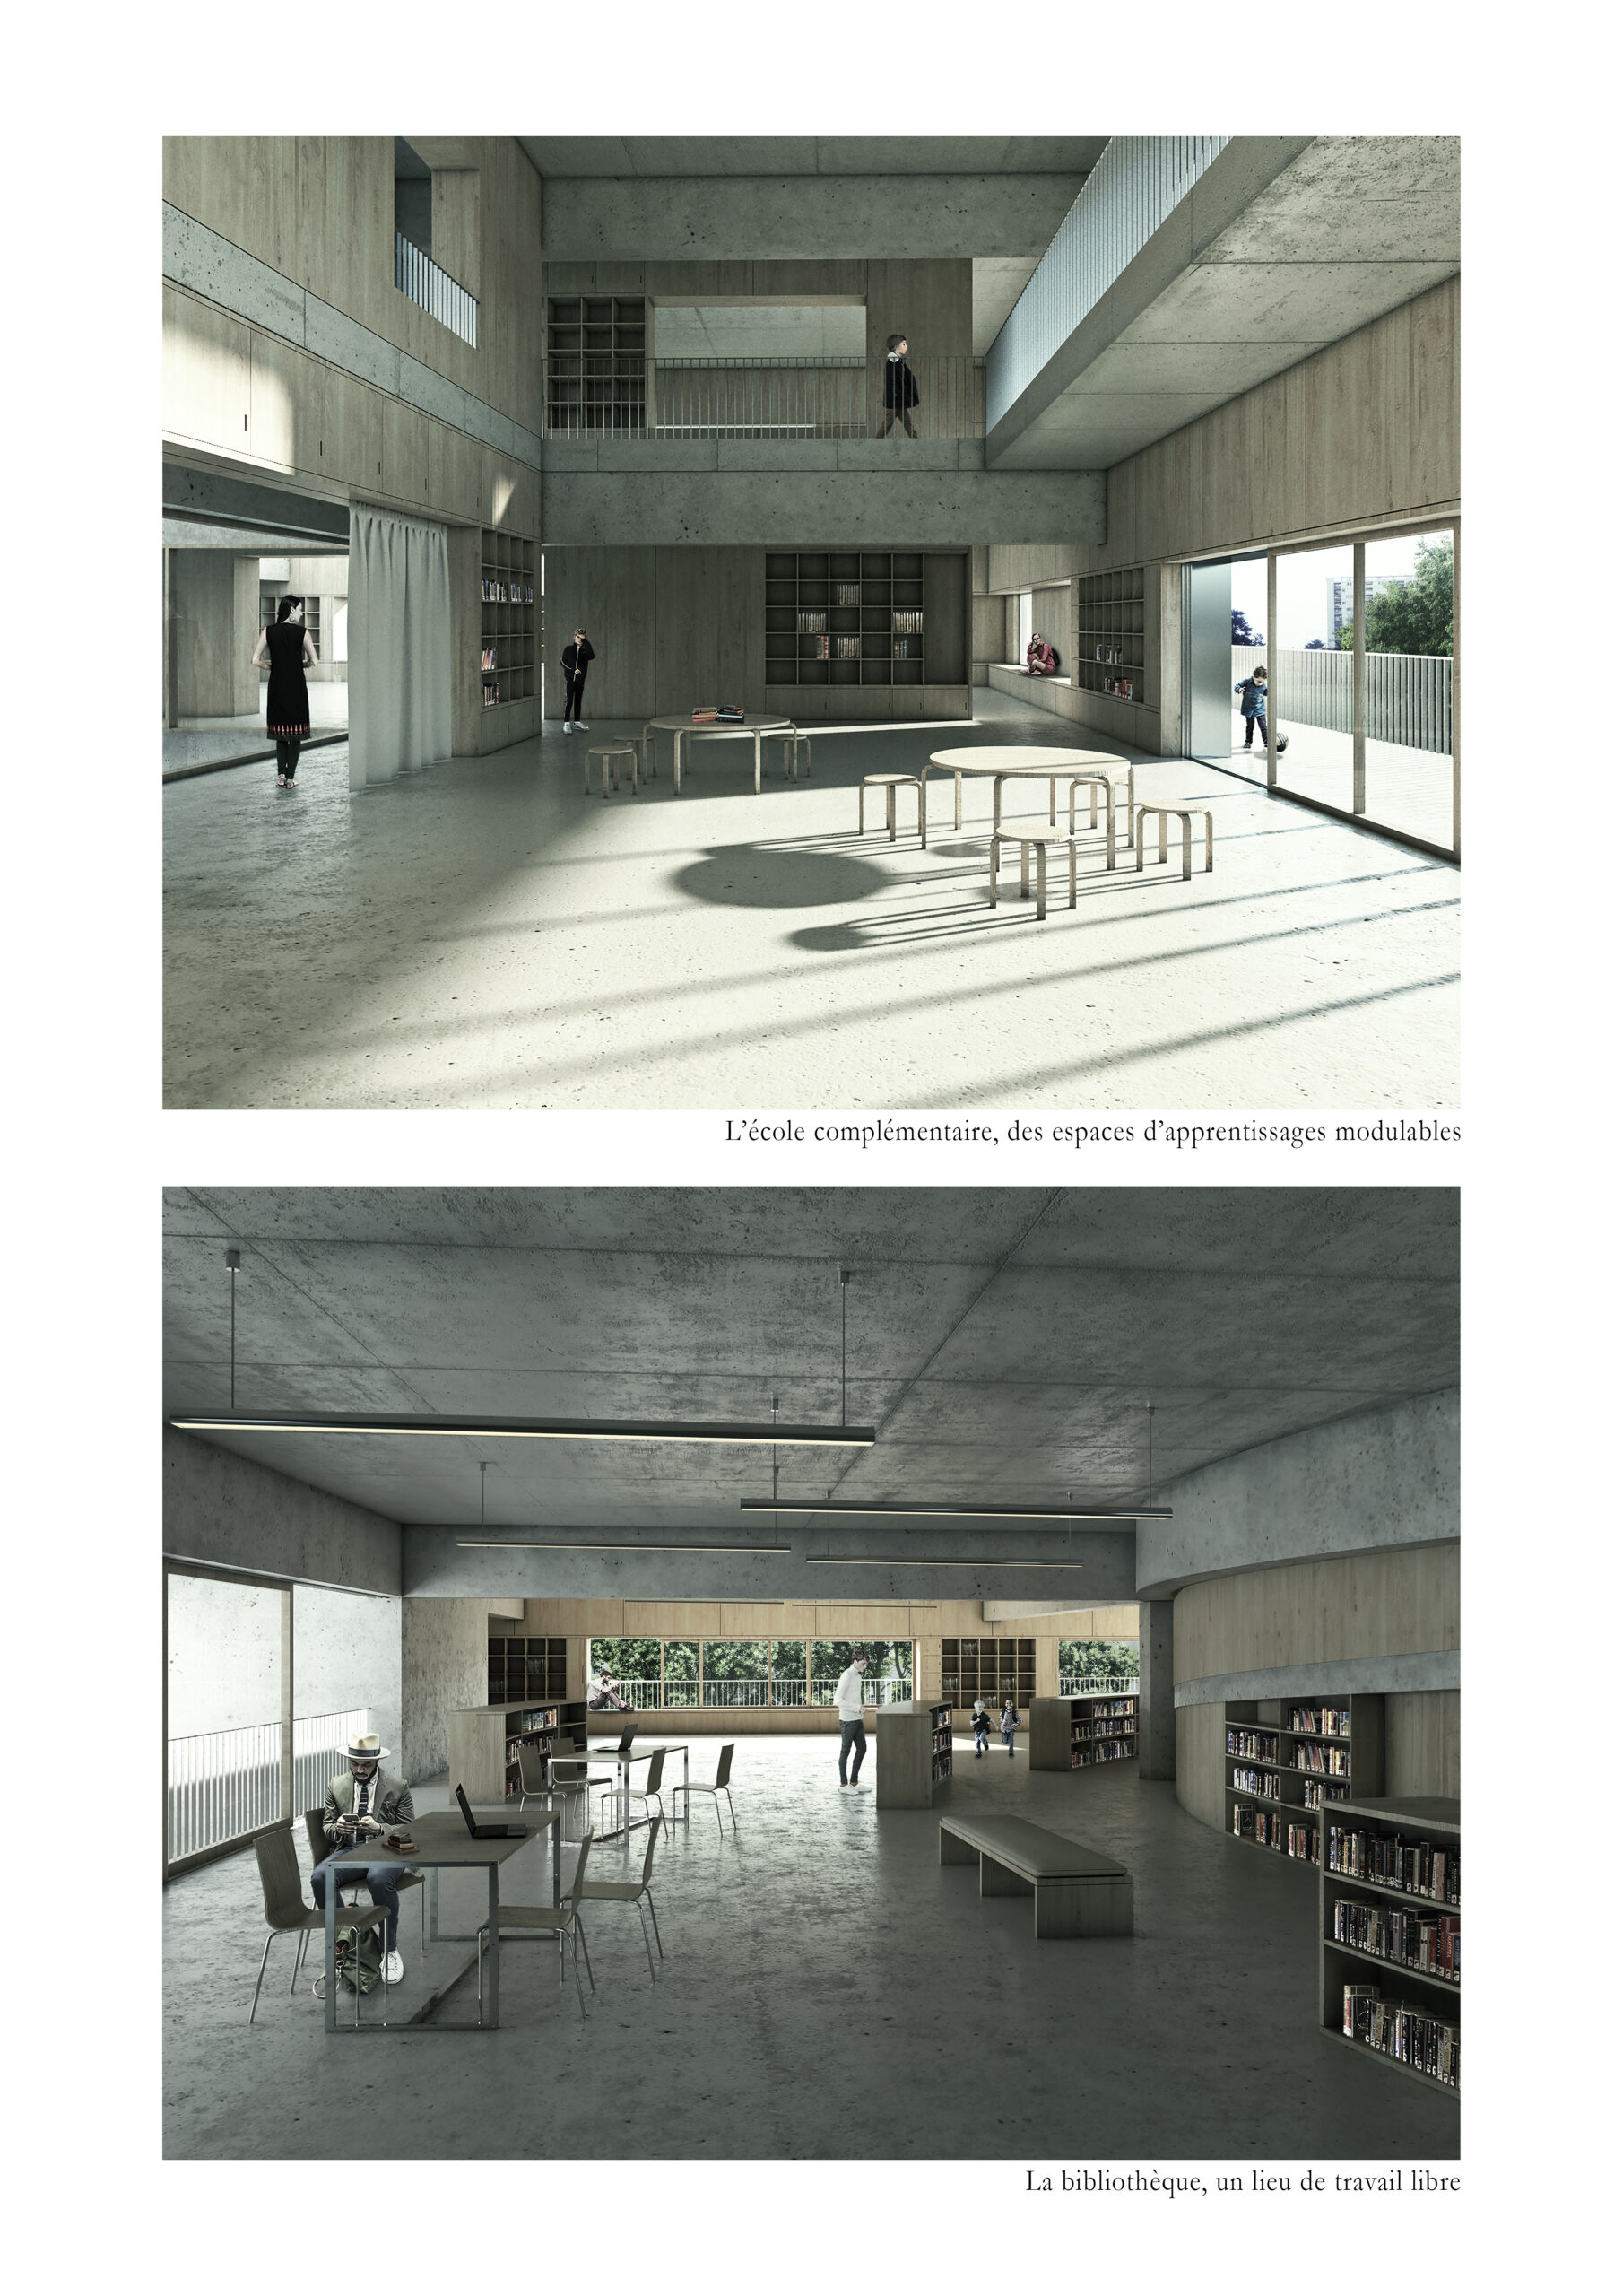 Image d'une classe et de la biblitohèque / Gautier BAUFILS & Gaspard JOURNET